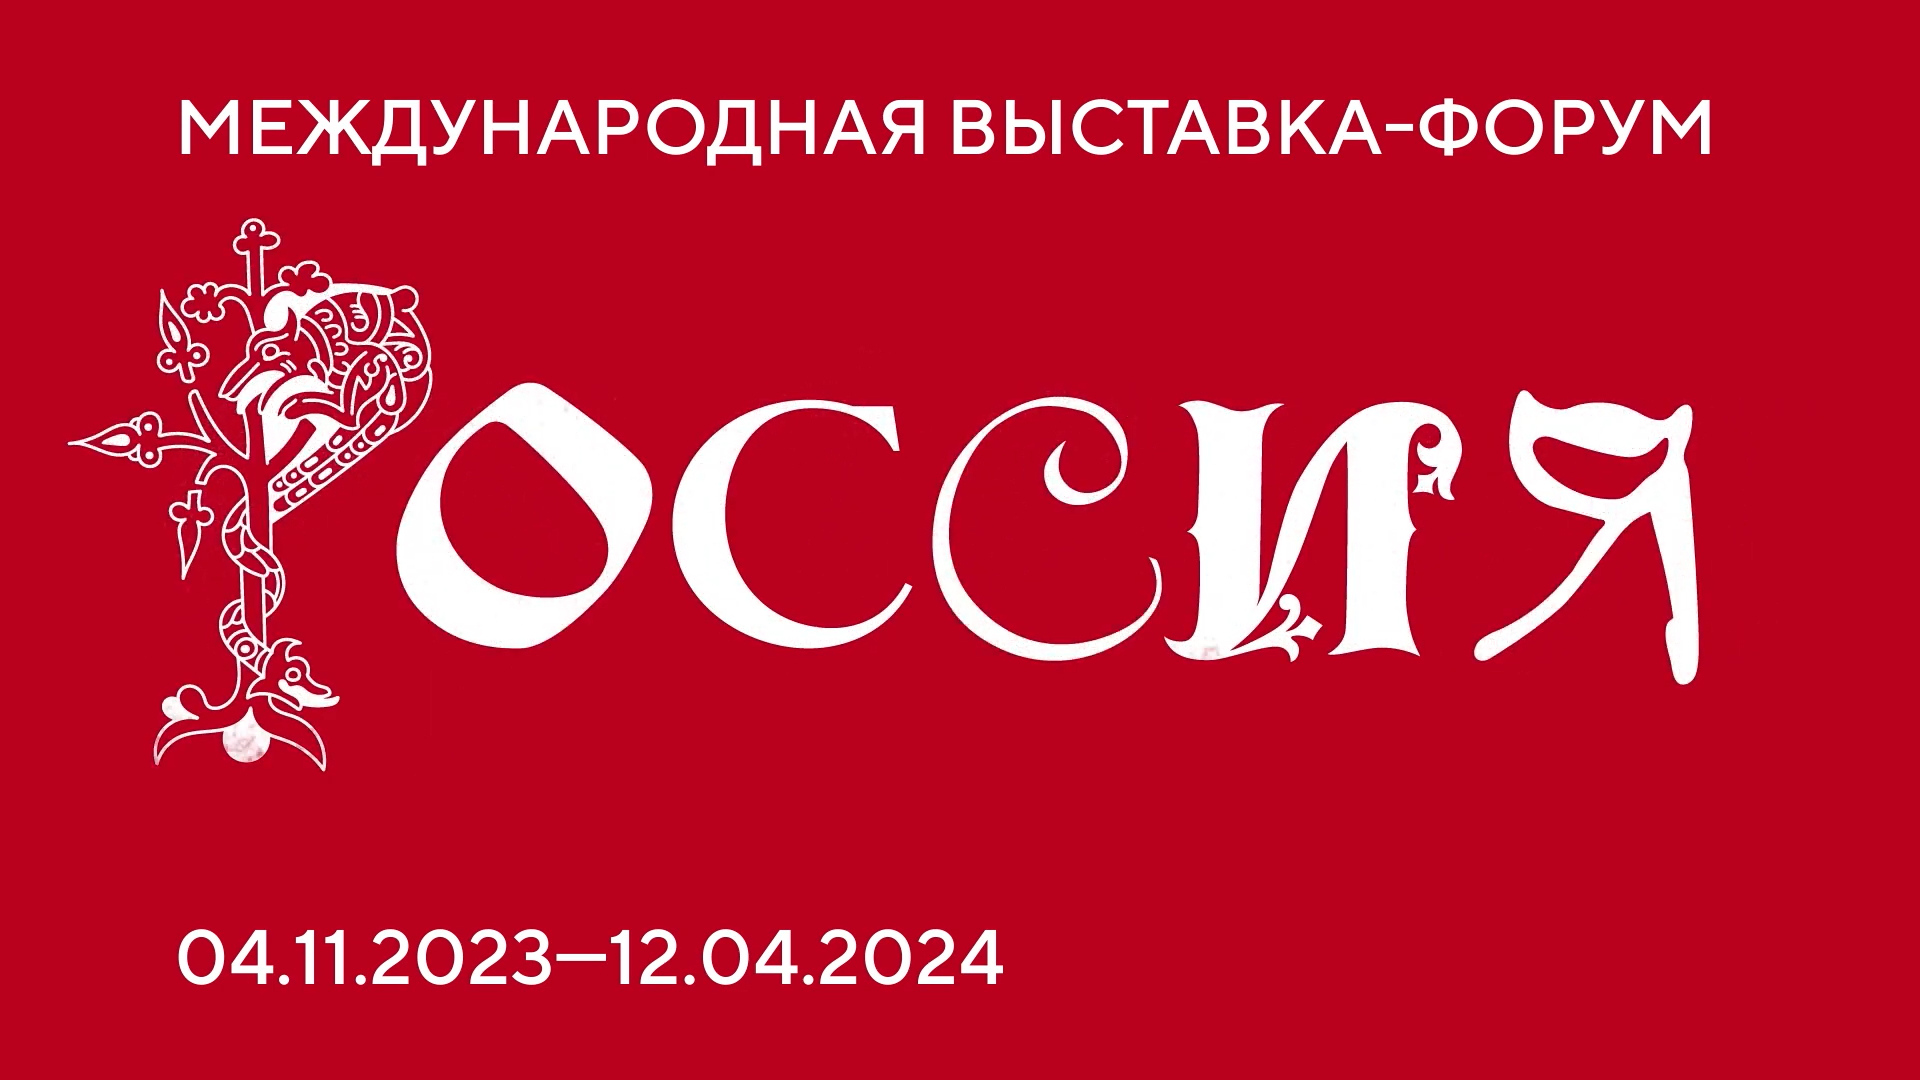 Сергей Собянин рассказал о предстоящей выставке-форуме «Россия» на ВДНХ